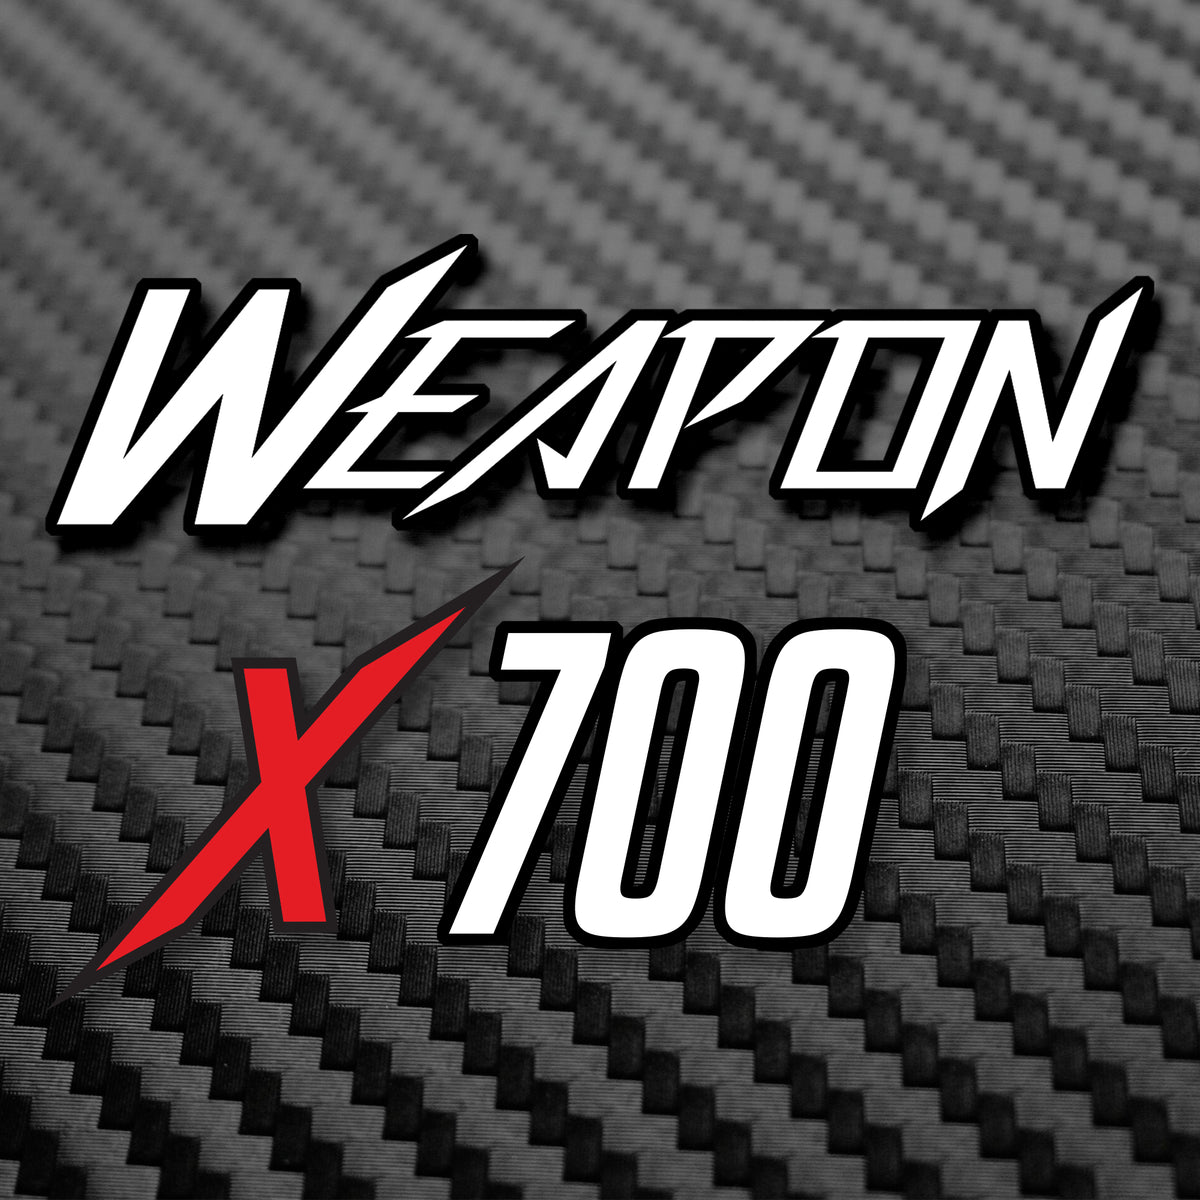 WEAPON-X.700 (Stage 1) [C7 Corvette Z06, LT4] – WEAPON-X Motorsports